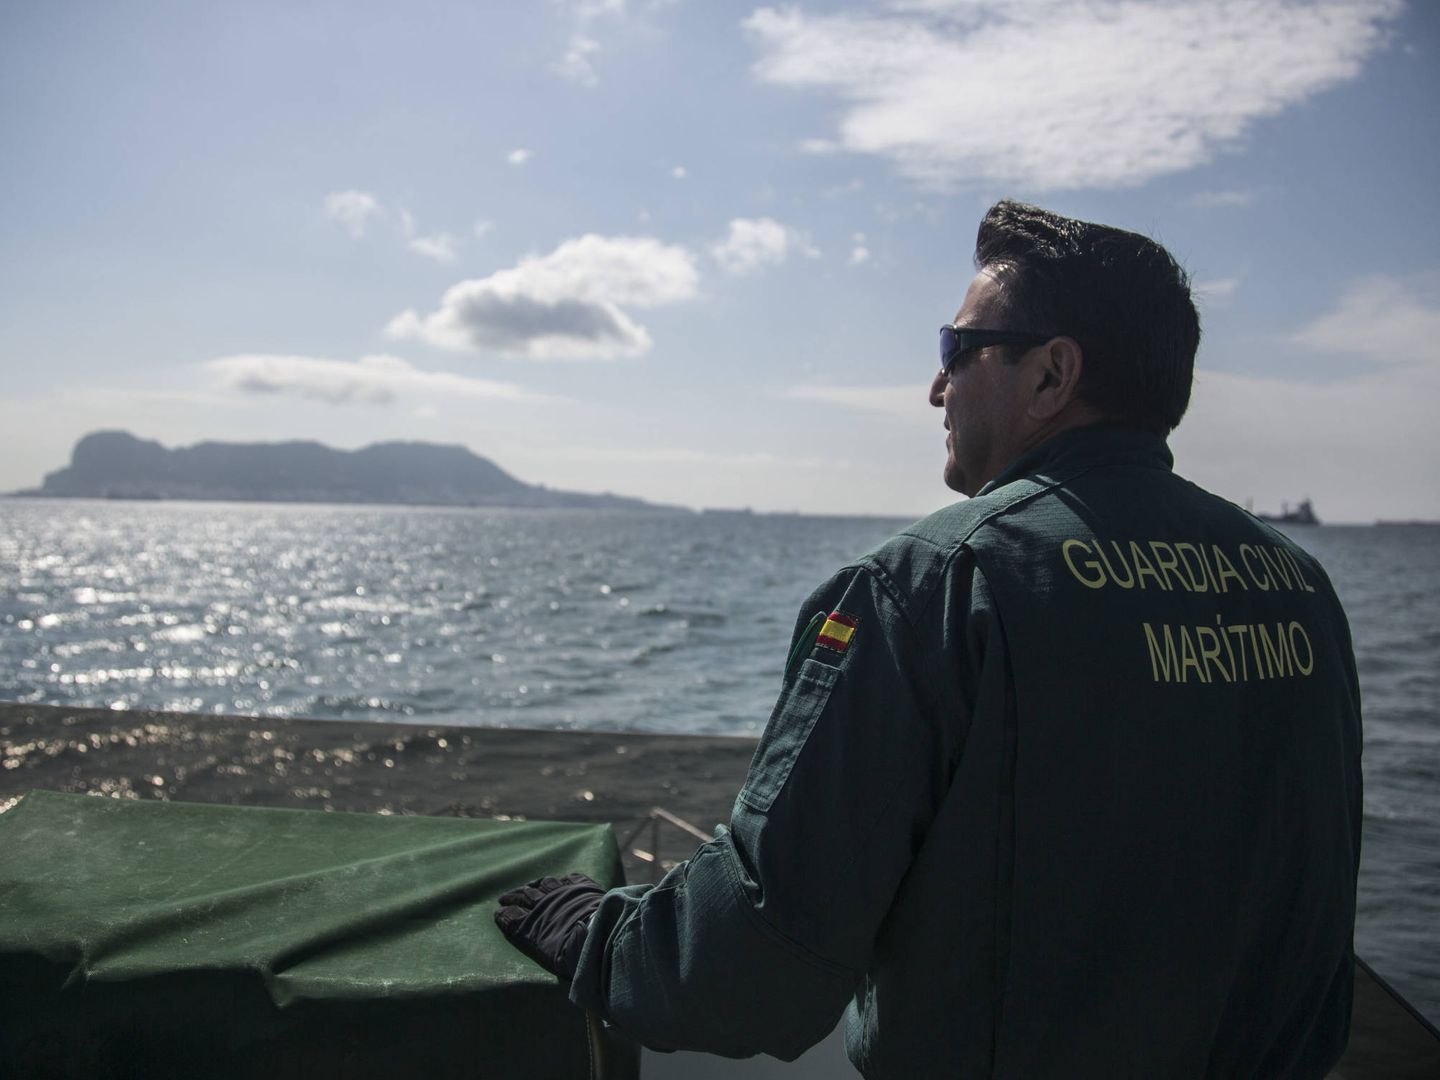 Cubierta del barco del Servicio Marítimo de la Guardia Civil. (Fernando Ruso)